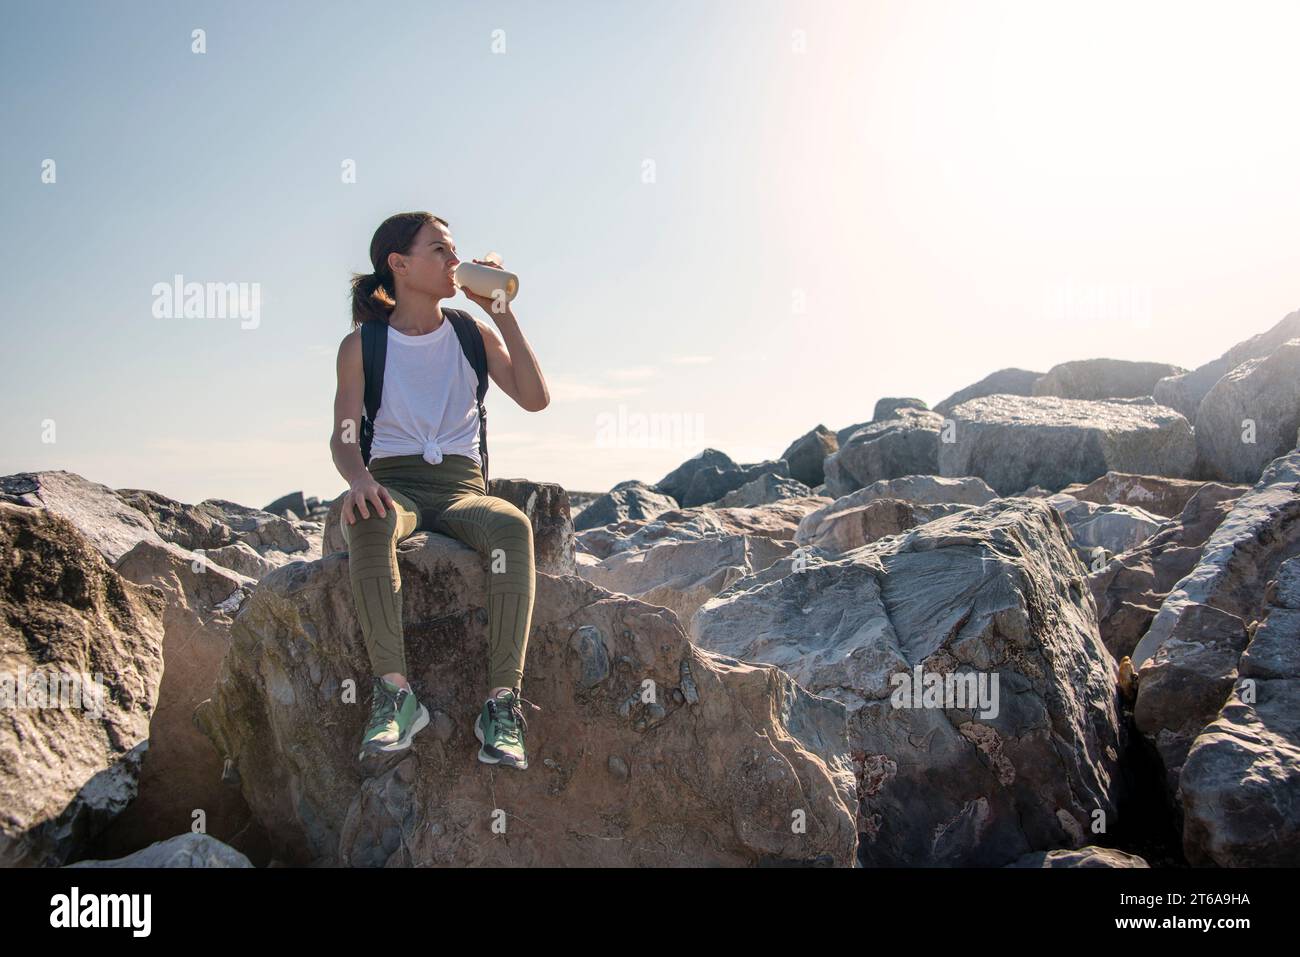 Una mujer excursionista se sienta en la roca descansando al sol, bebiendo agua de una botella Foto de stock